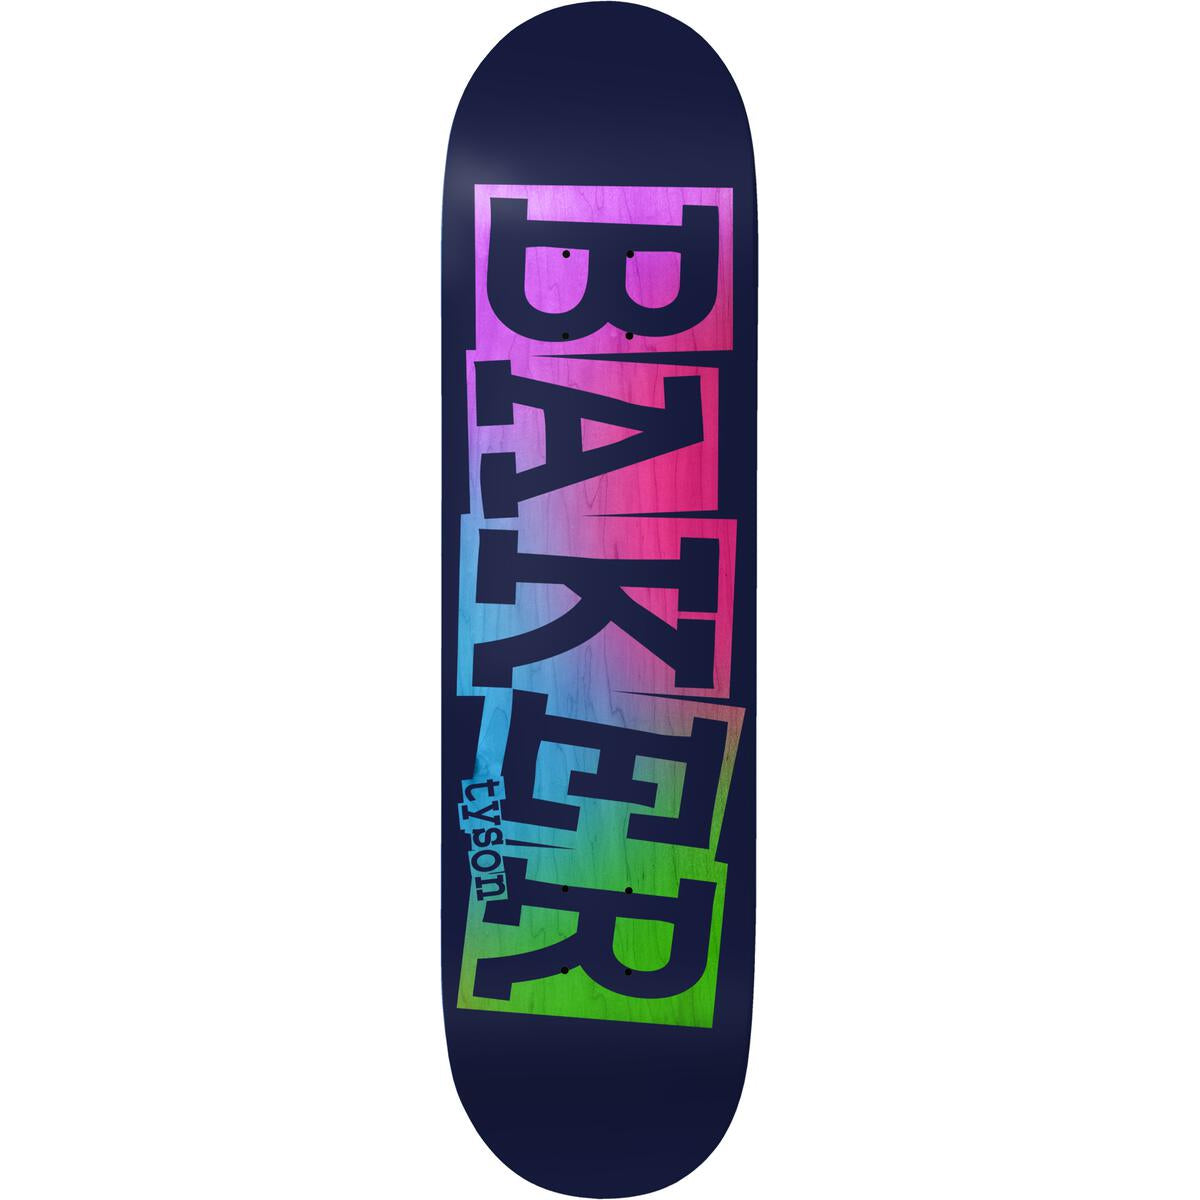 Tyson Peterson Ribbon Name Baker Skateboard Deck